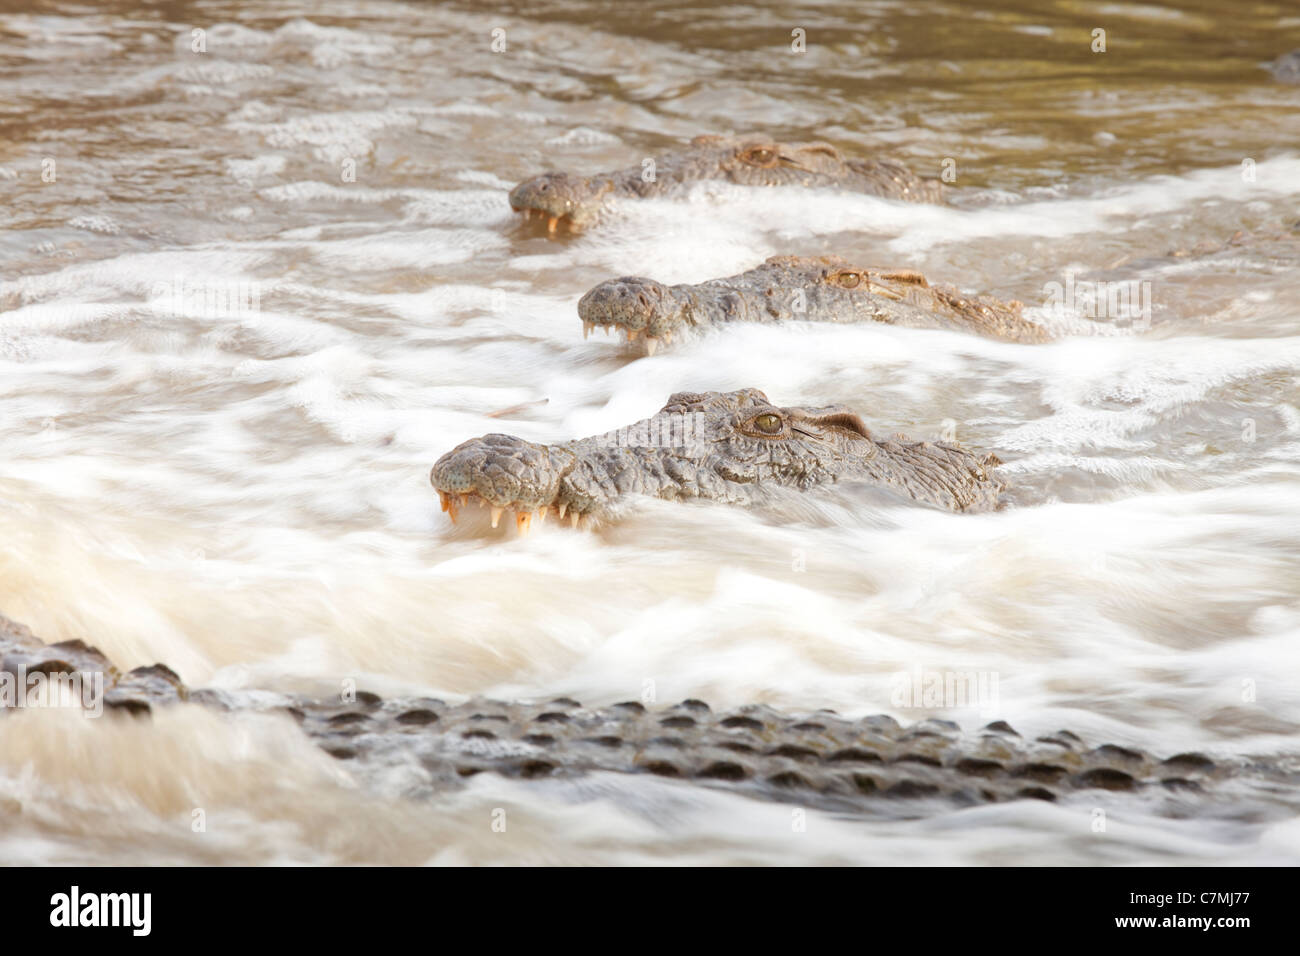 Coccodrillo del Nilo. I coccodrilli raccogliere dove il flusso si restringe, in attesa di pesci a nuotare a destra in loro trappole. Foto Stock